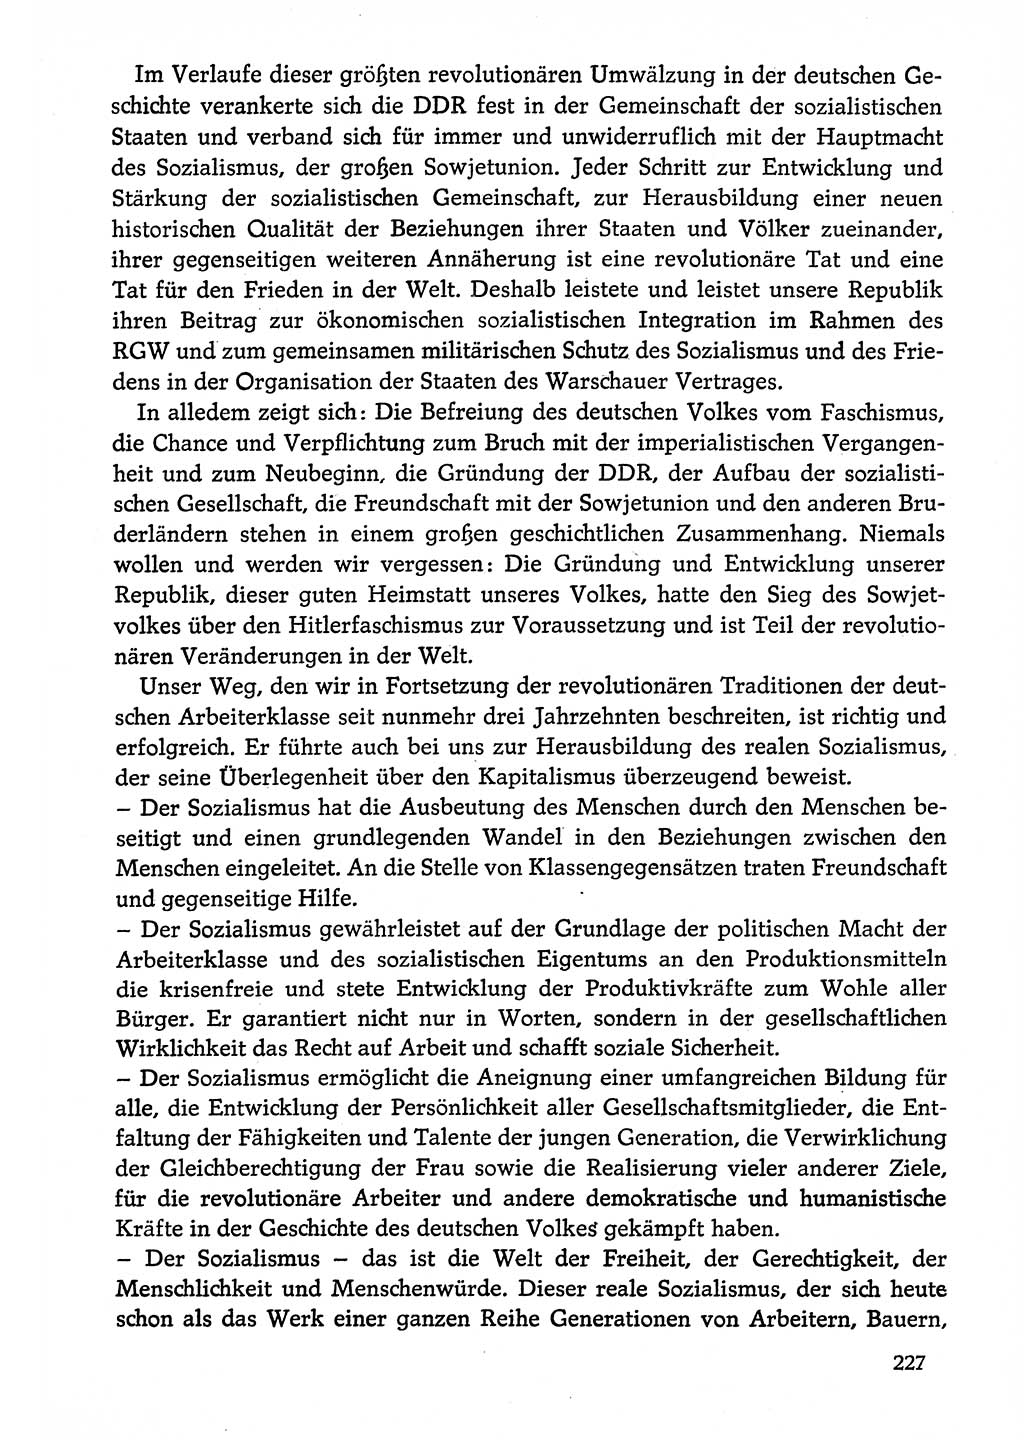 Dokumente der Sozialistischen Einheitspartei Deutschlands (SED) [Deutsche Demokratische Republik (DDR)] 1974-1975, Seite 227 (Dok. SED DDR 1978, Bd. ⅩⅤ, S. 227)